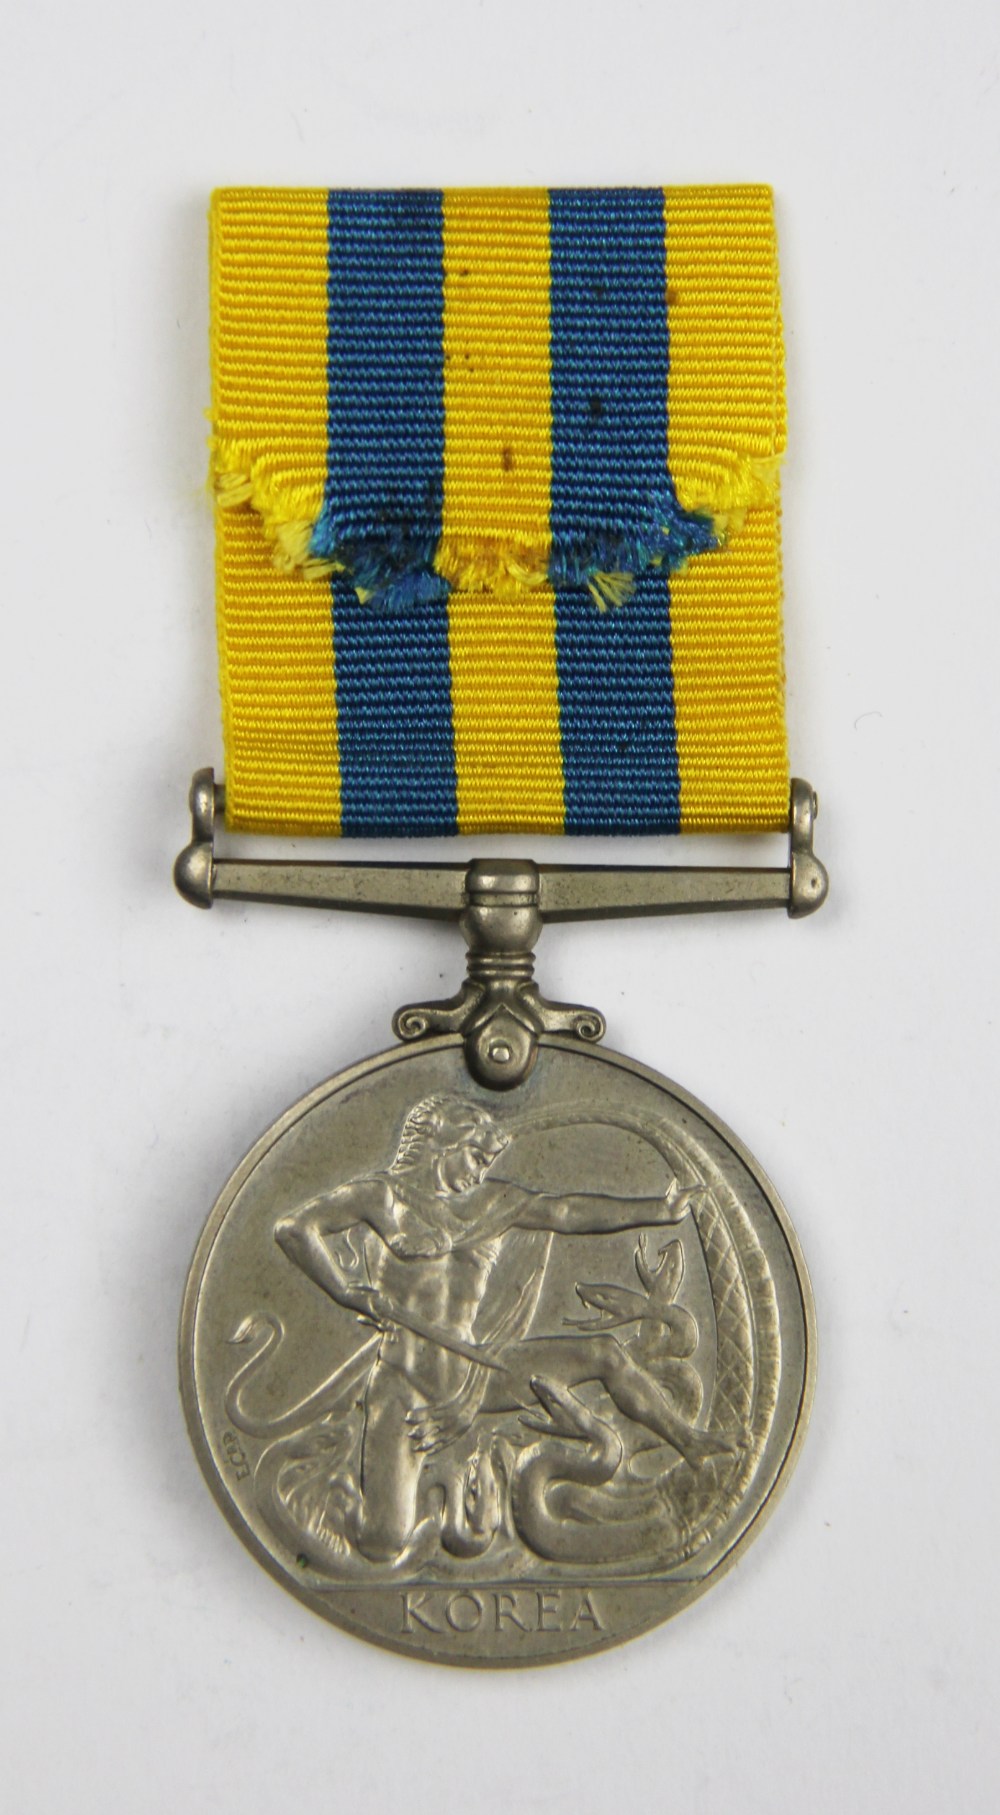 A Korea Medal to 22464248 Pte P A Felvus, R. - Image 2 of 3